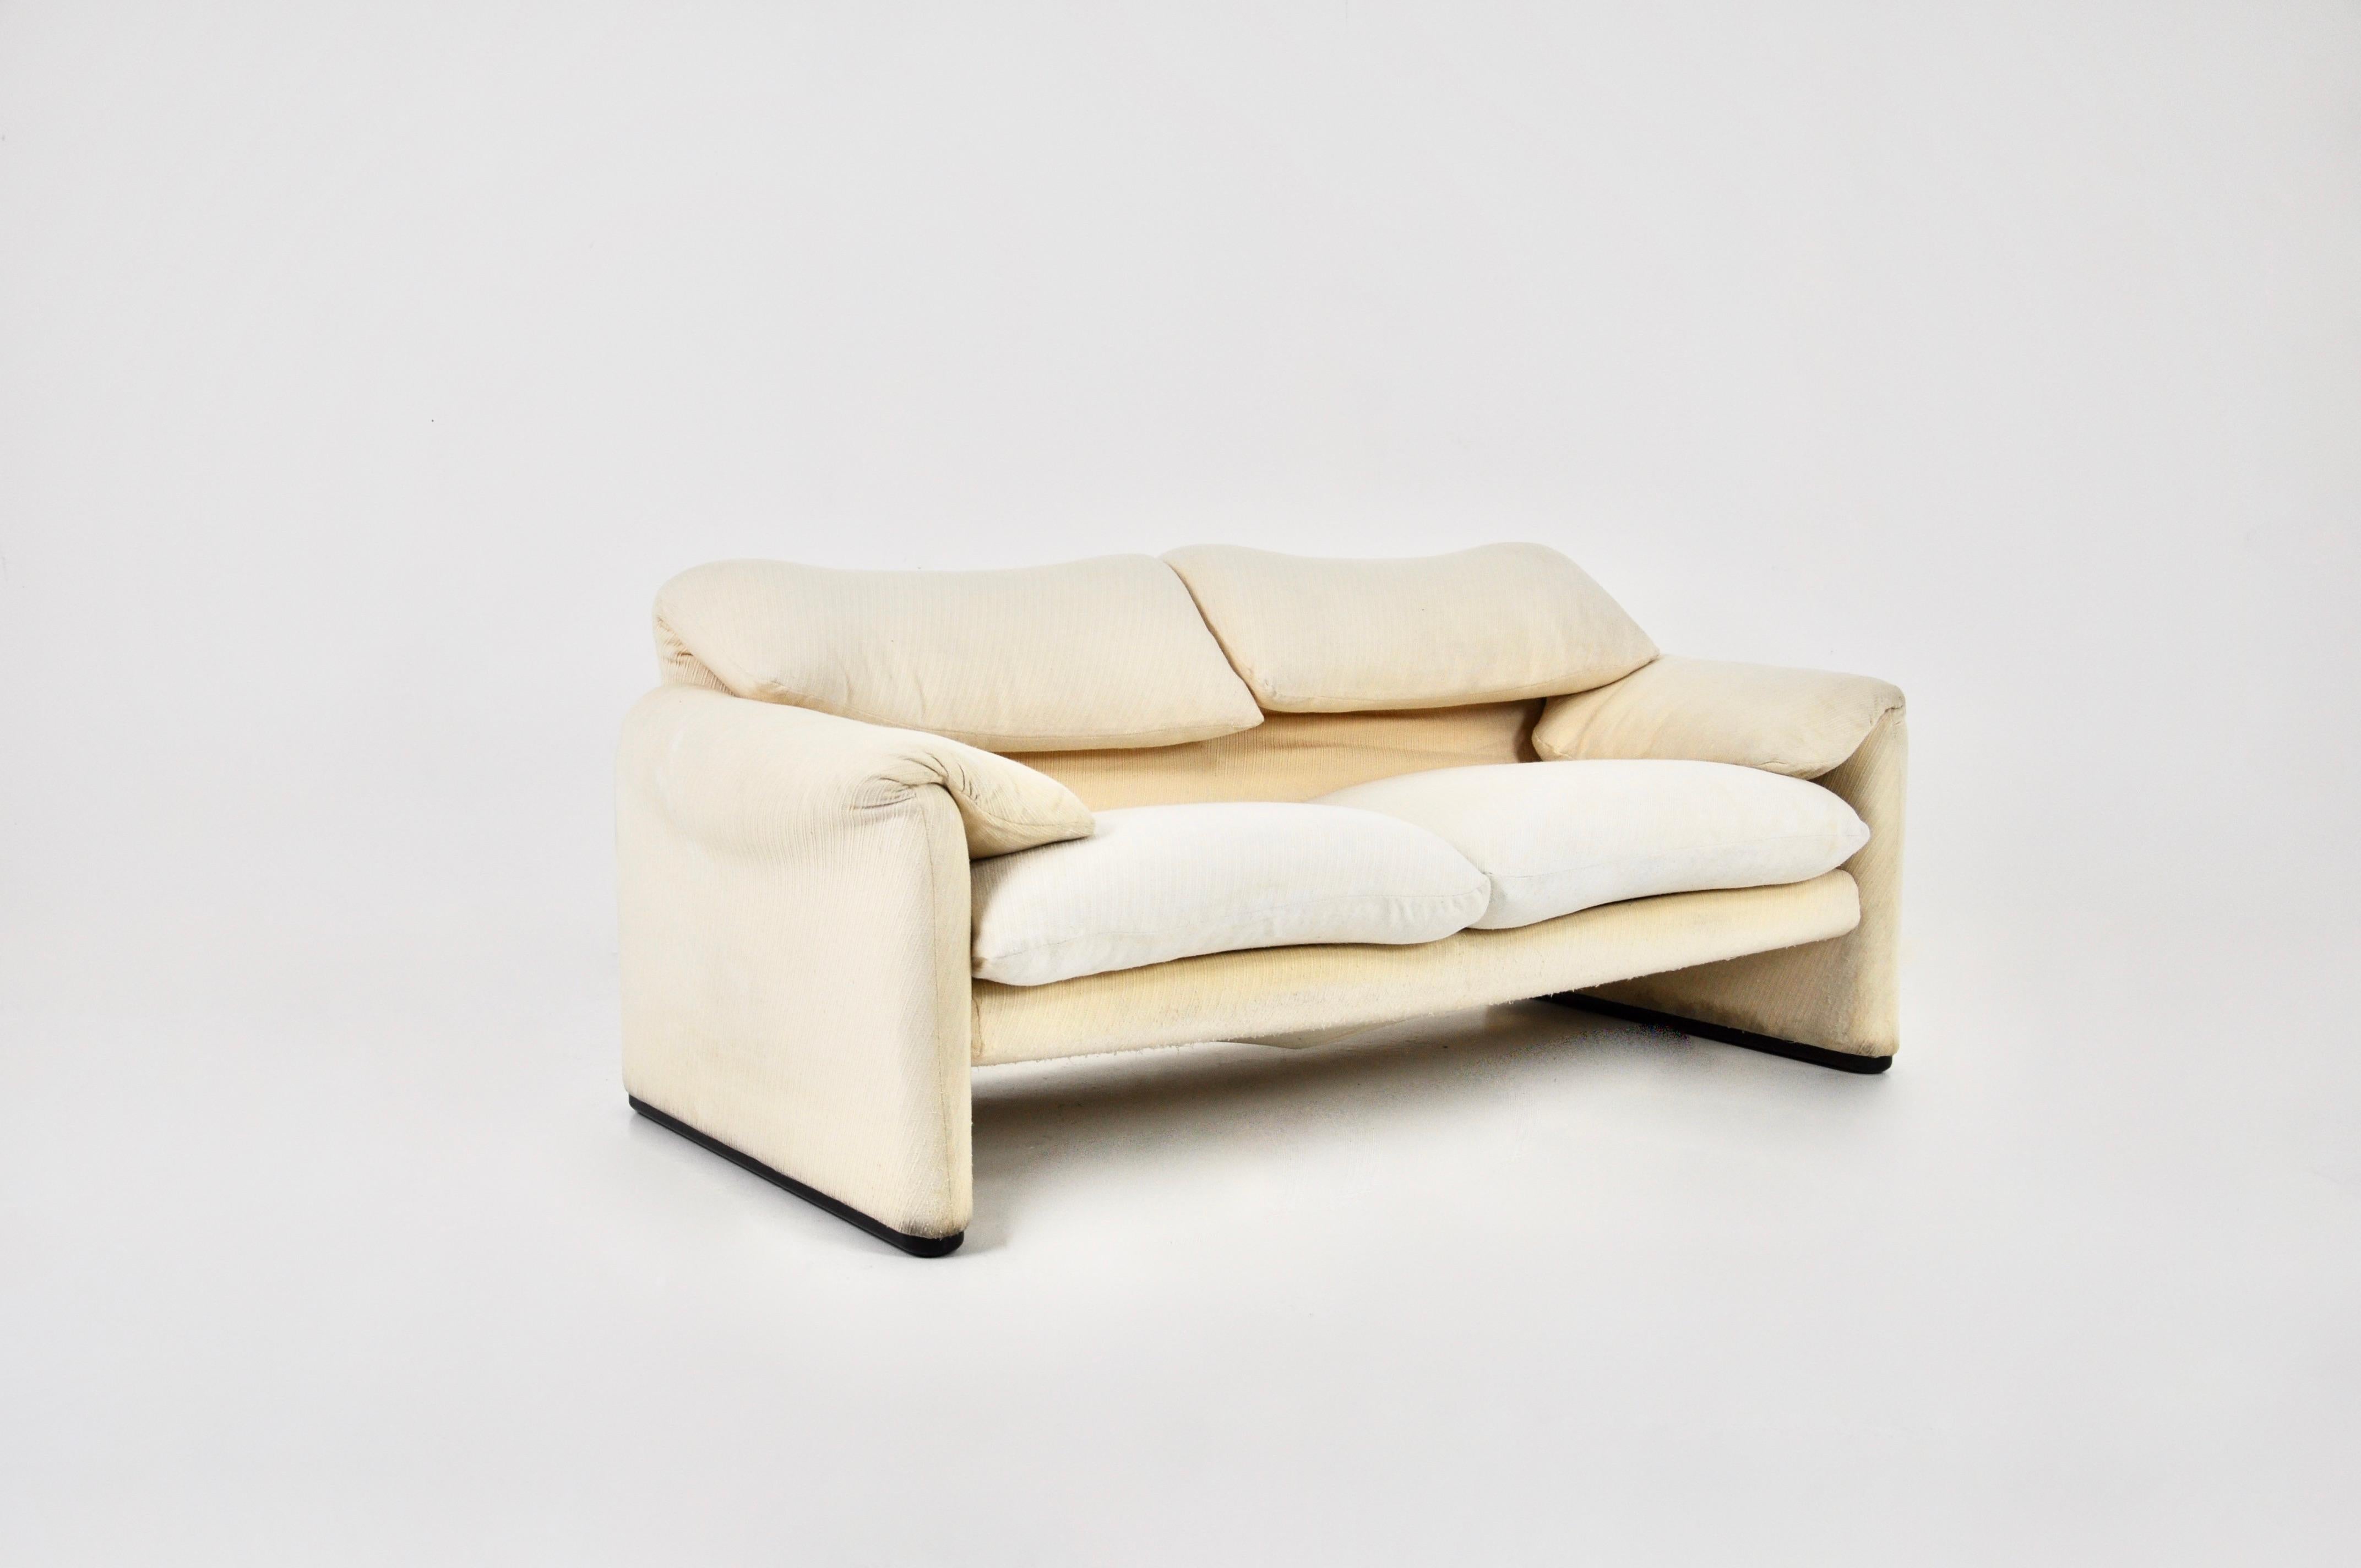 Sofa in cremeweißem Stoff. Es ist möglich, die Rückenlehne für mehr Komfort zu öffnen. Höhe in geöffnetem Zustand: 96 cm. Sitzhöhe: 44 cm. Zeit- und altersbedingte Abnutzung.
